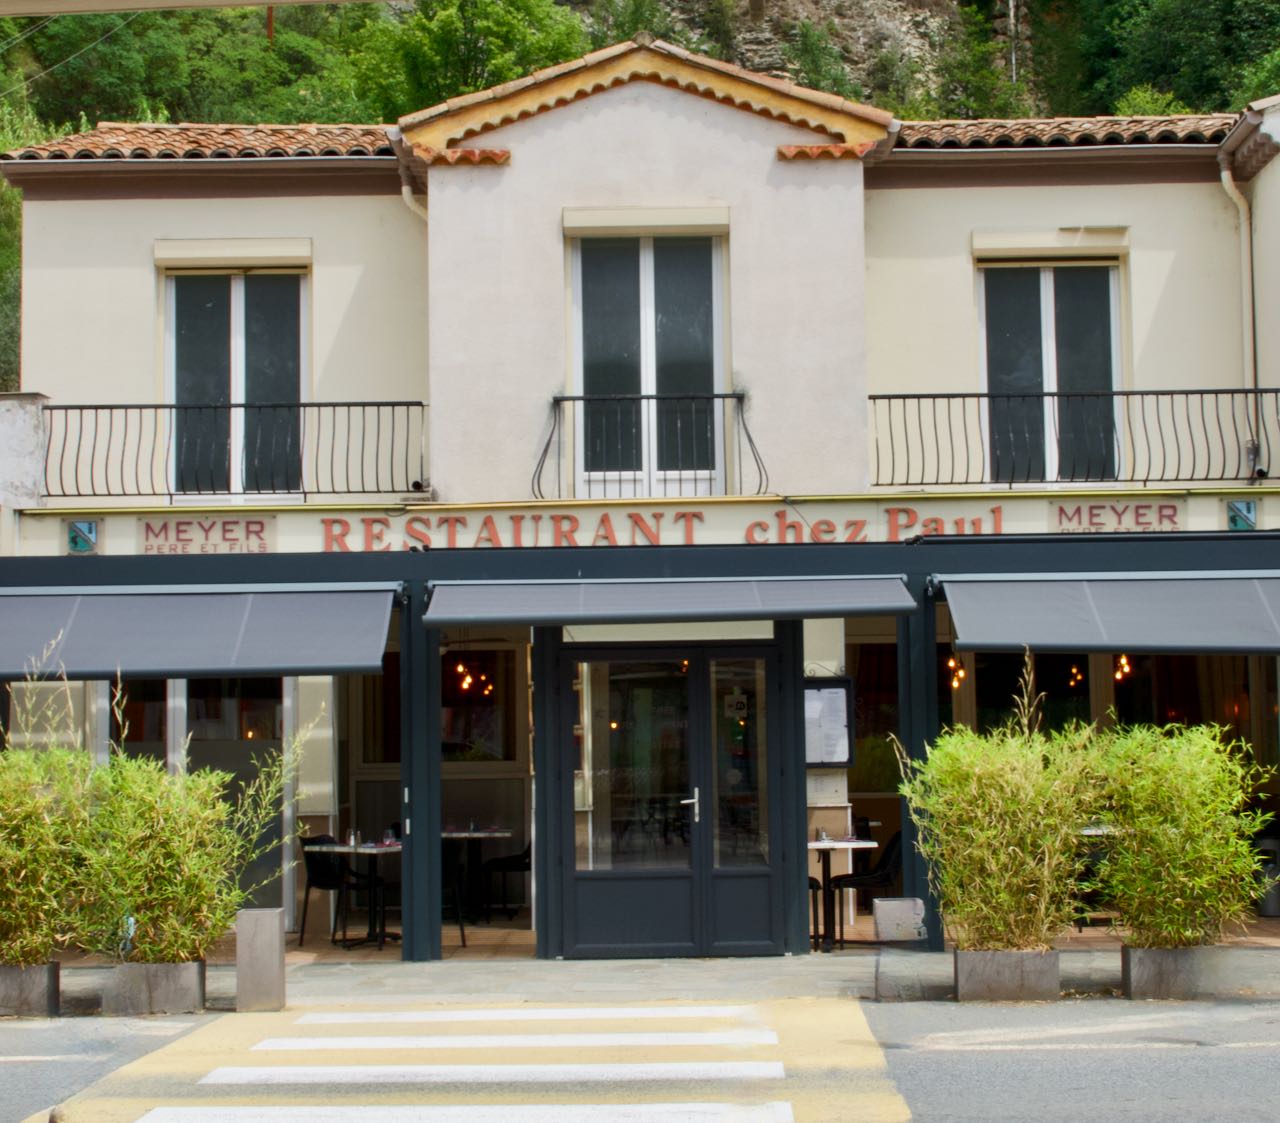 Façade de l'entrée principale du restaurant chez Paul du chef Didier Meyer à Touët sur Var, Mercantour, Alpes du Sud, Route des grandes Alpes, France